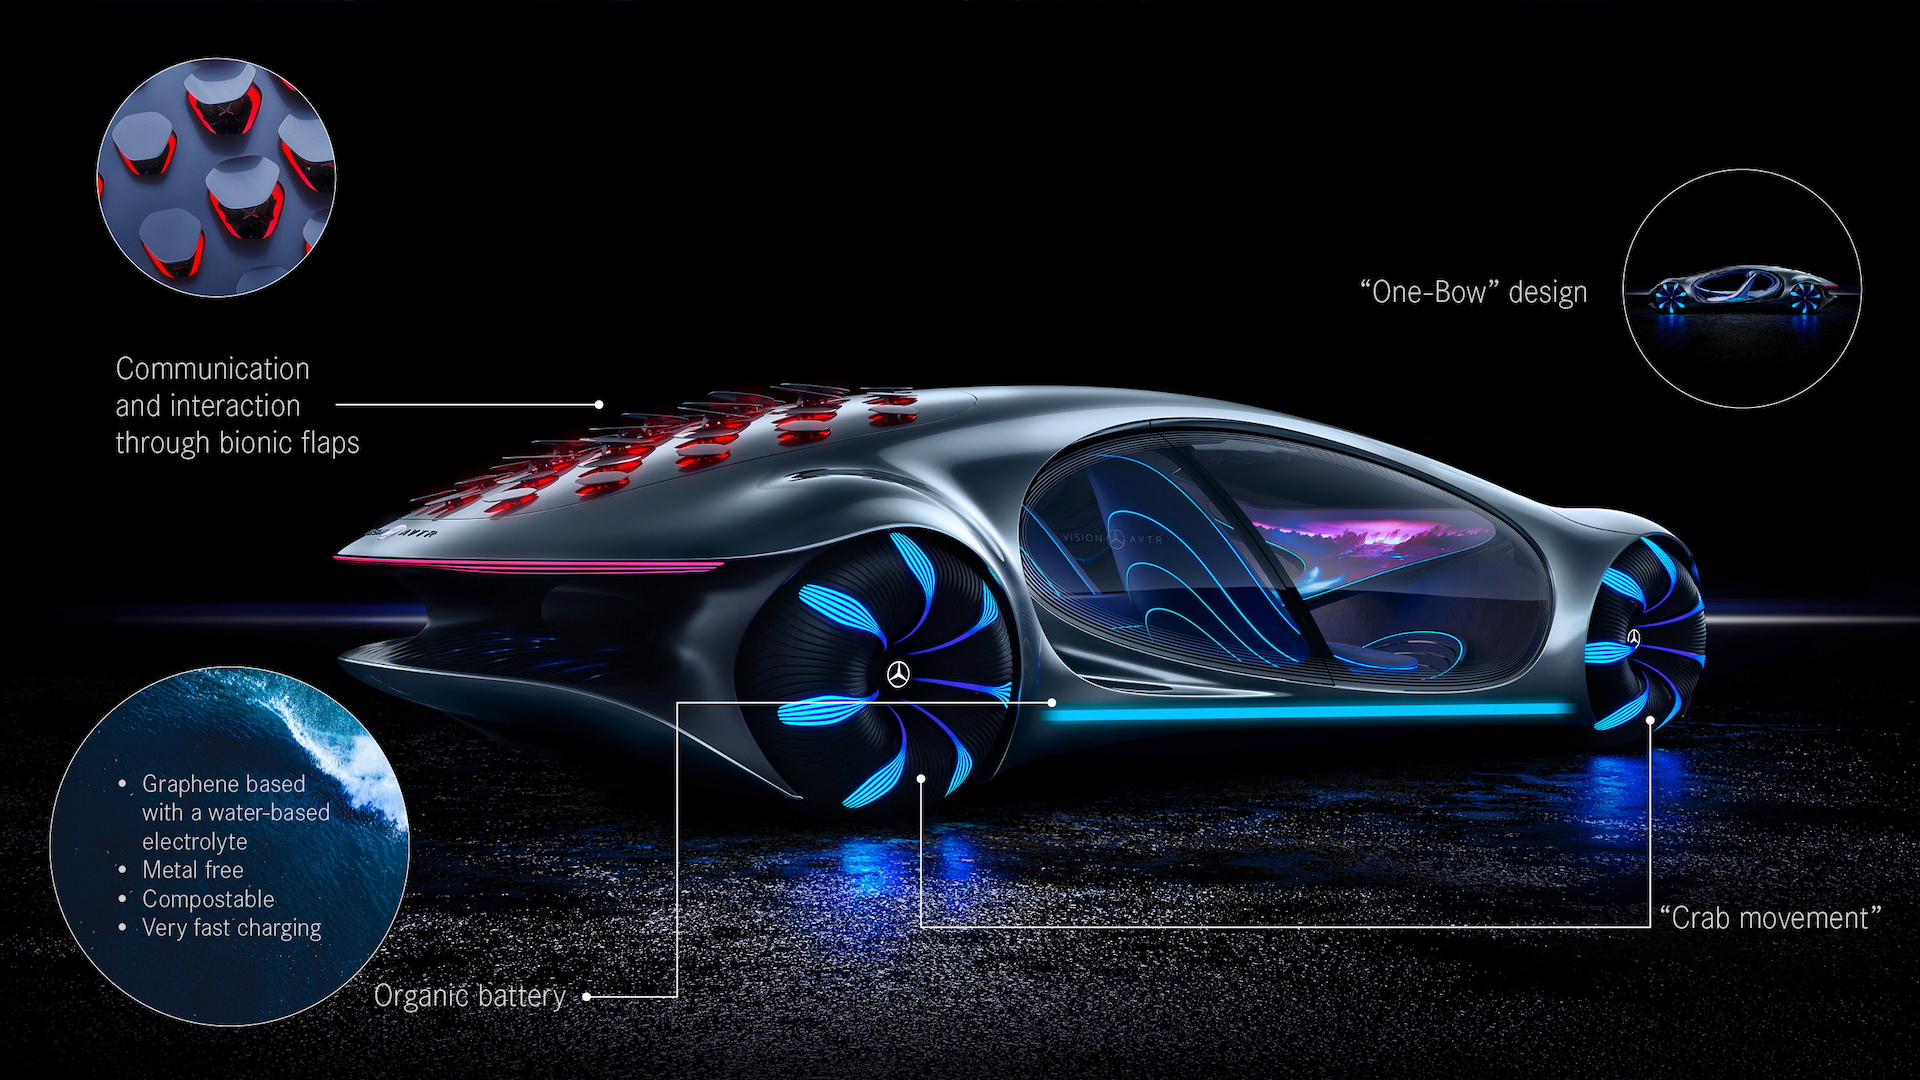 Mercedes-Benz Vision AVTR concept